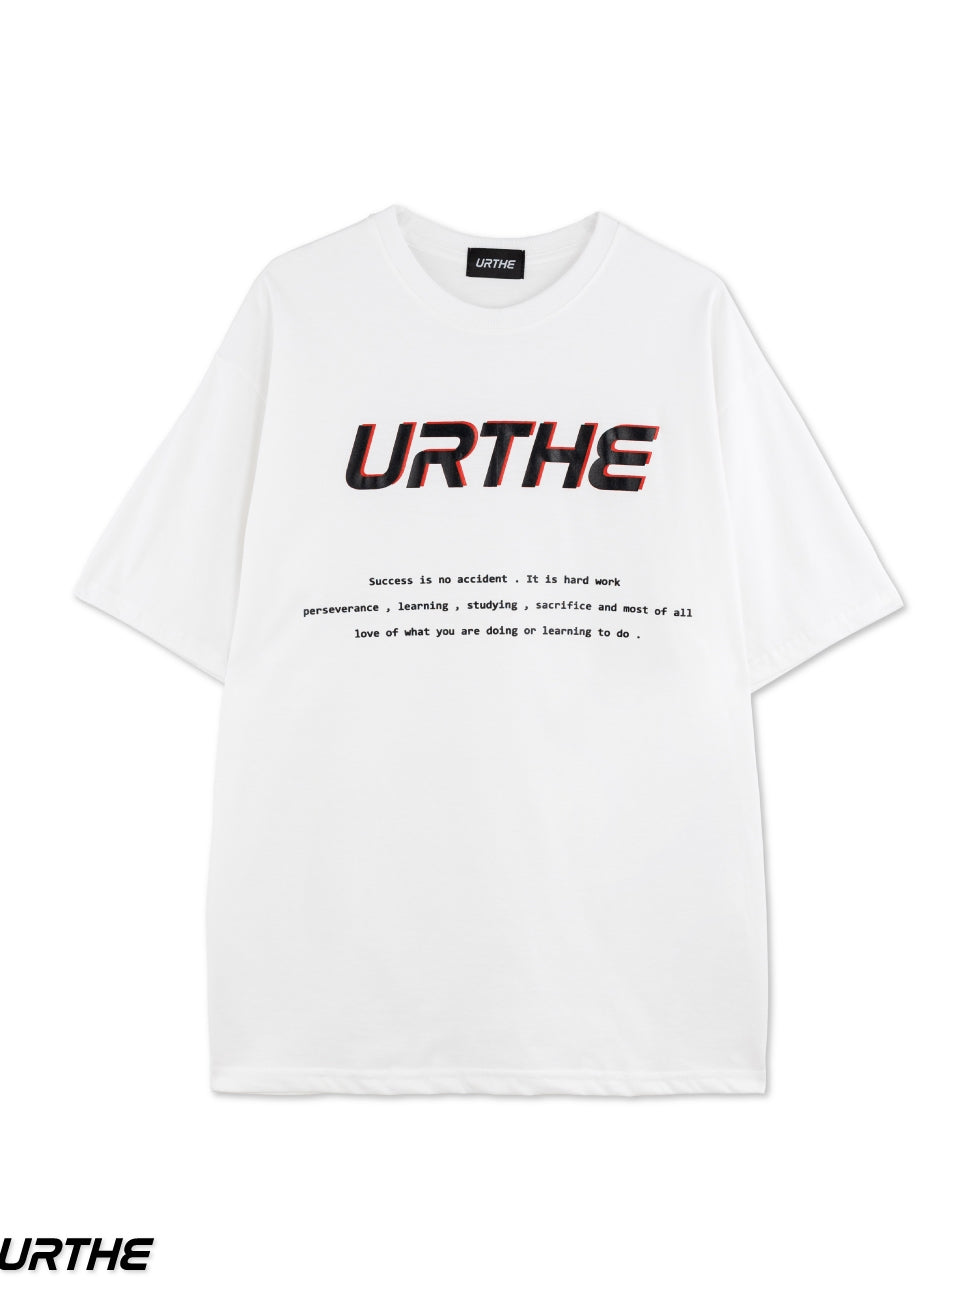 URTHE - เสื้อยืด เเขนสั้น สกรีนลาย รุ่น SS